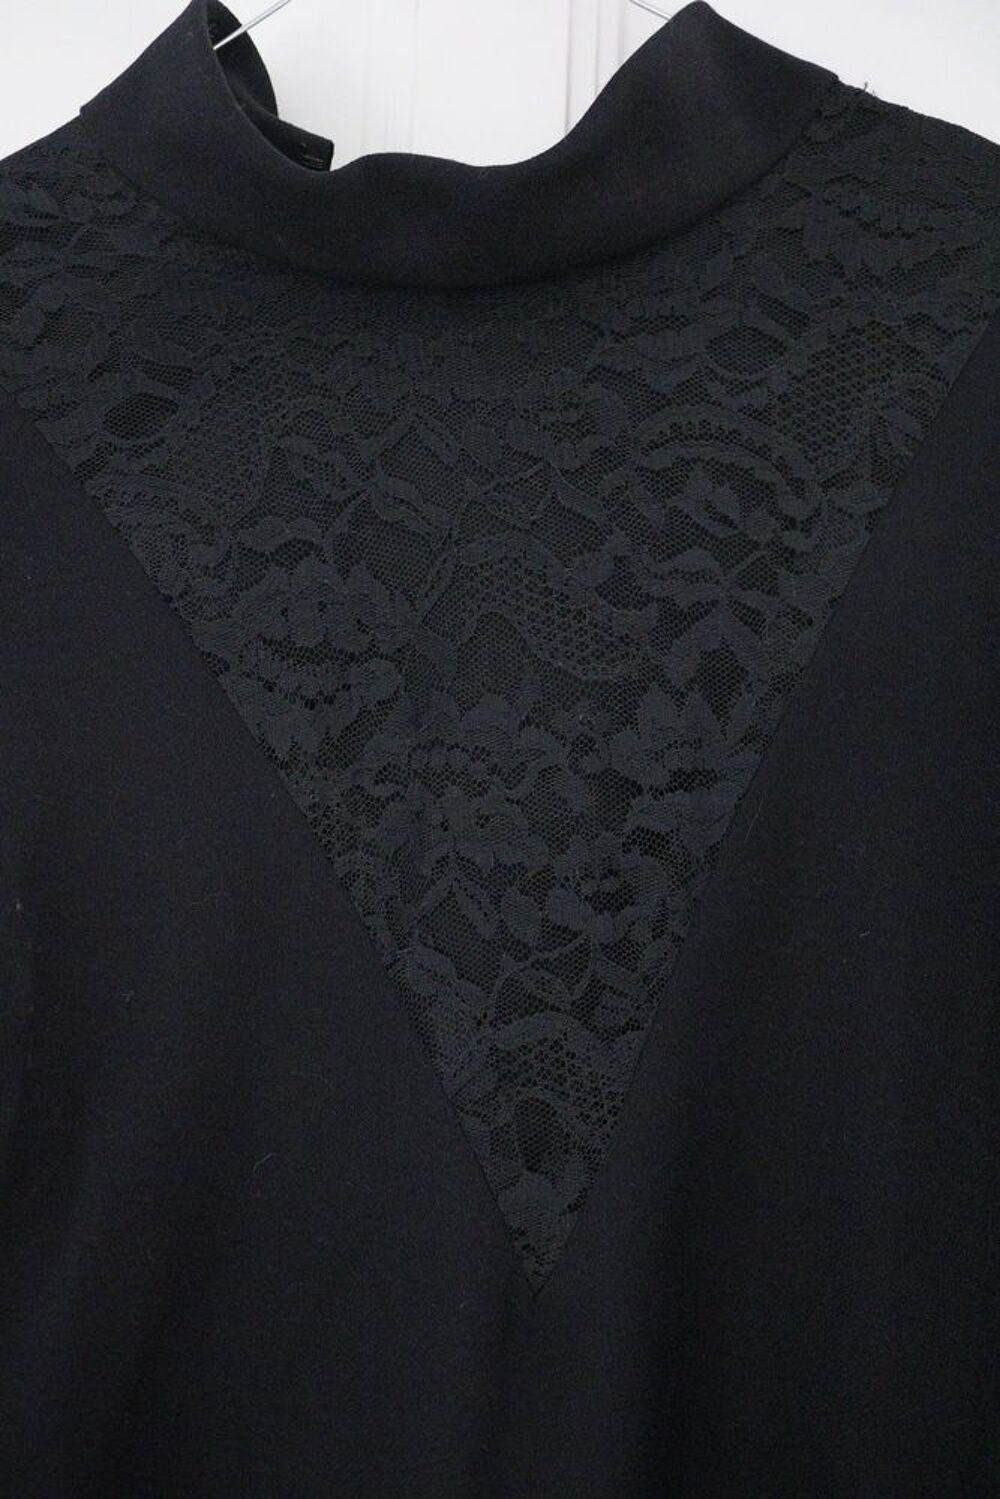 
robe noir pi&egrave;ce unique faites sur mesure
Vêtements